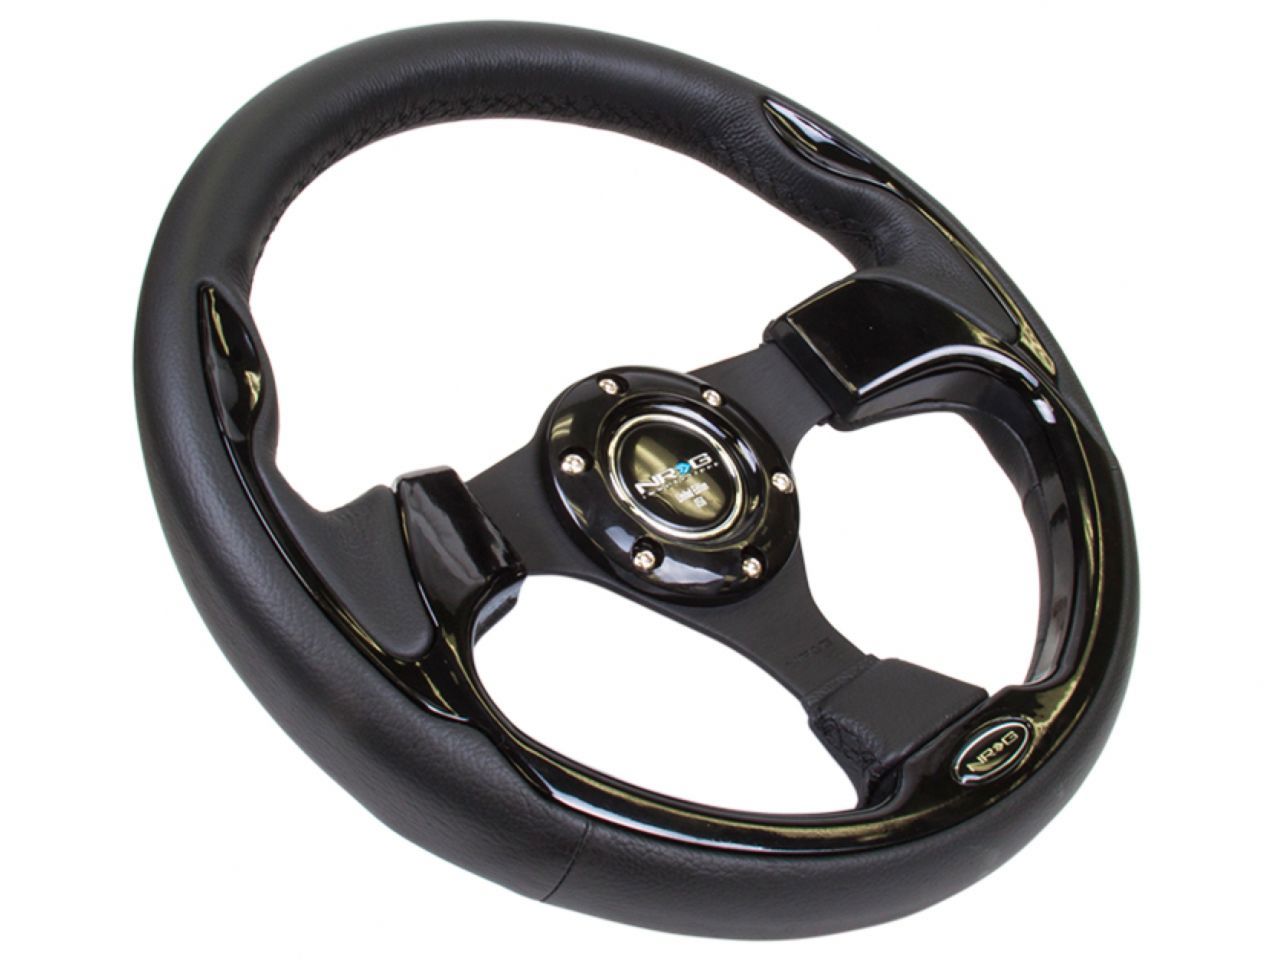 NRG Reinforced Steering Wheel- 320mm Sport Steering Wheel w/ Black Trim